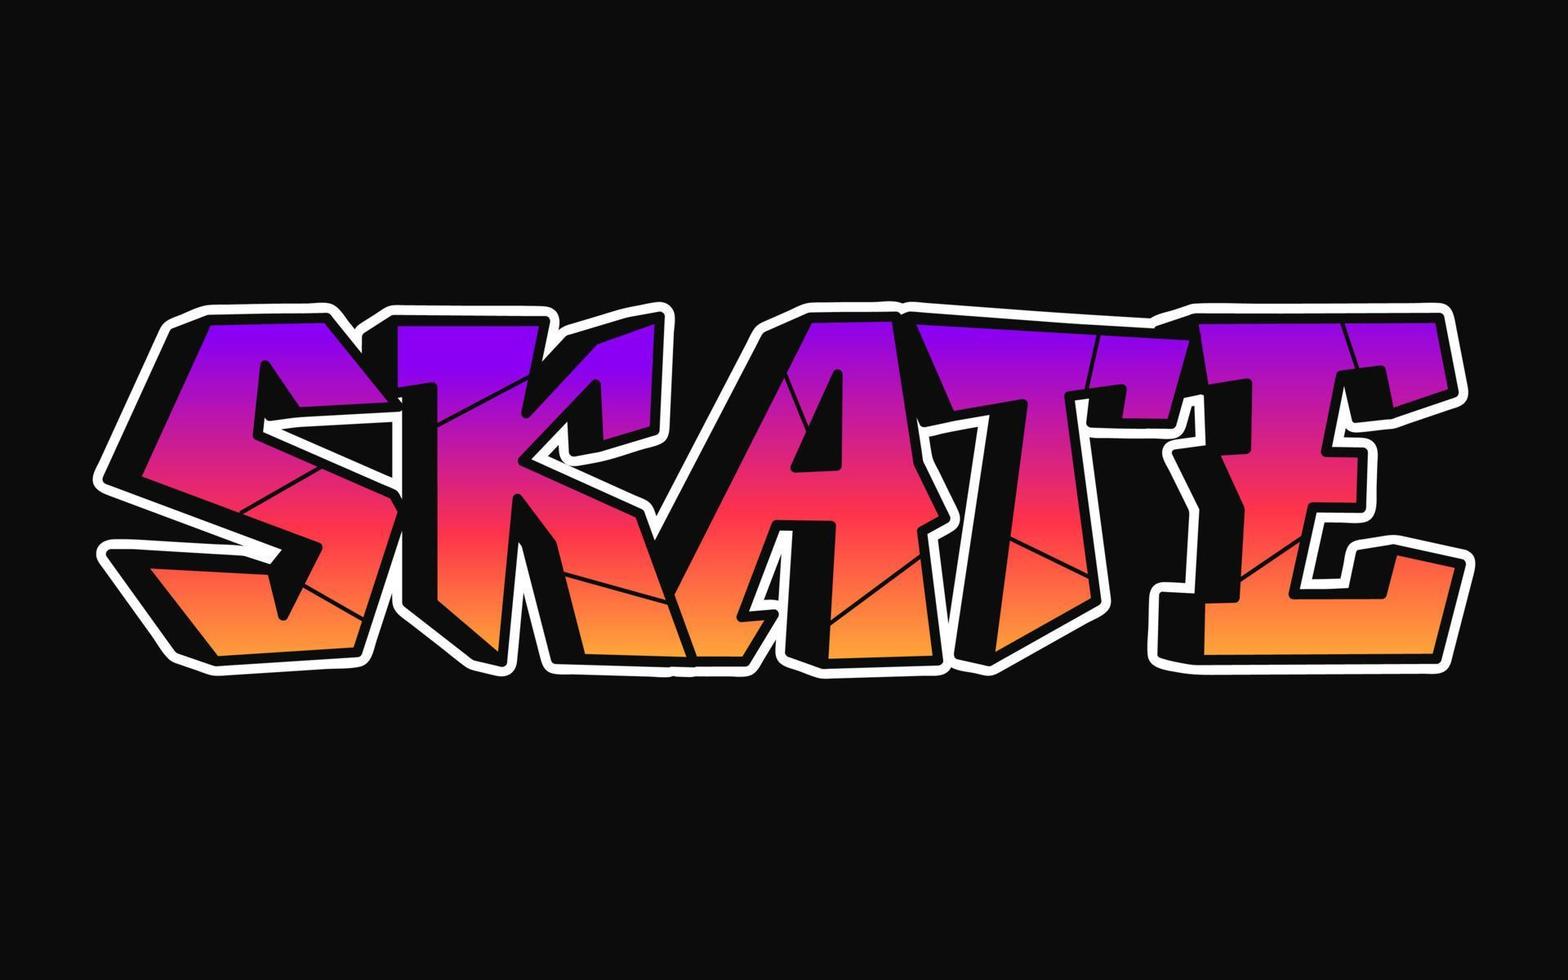 Skate-Wort-Graffiti-Stil-Buchstaben. Vektor handgezeichnete Doodle-Cartoon-Logo-Skate-Illustration. druck für poster, t-shirt, t-shirt, logo, aufkleberkonzept